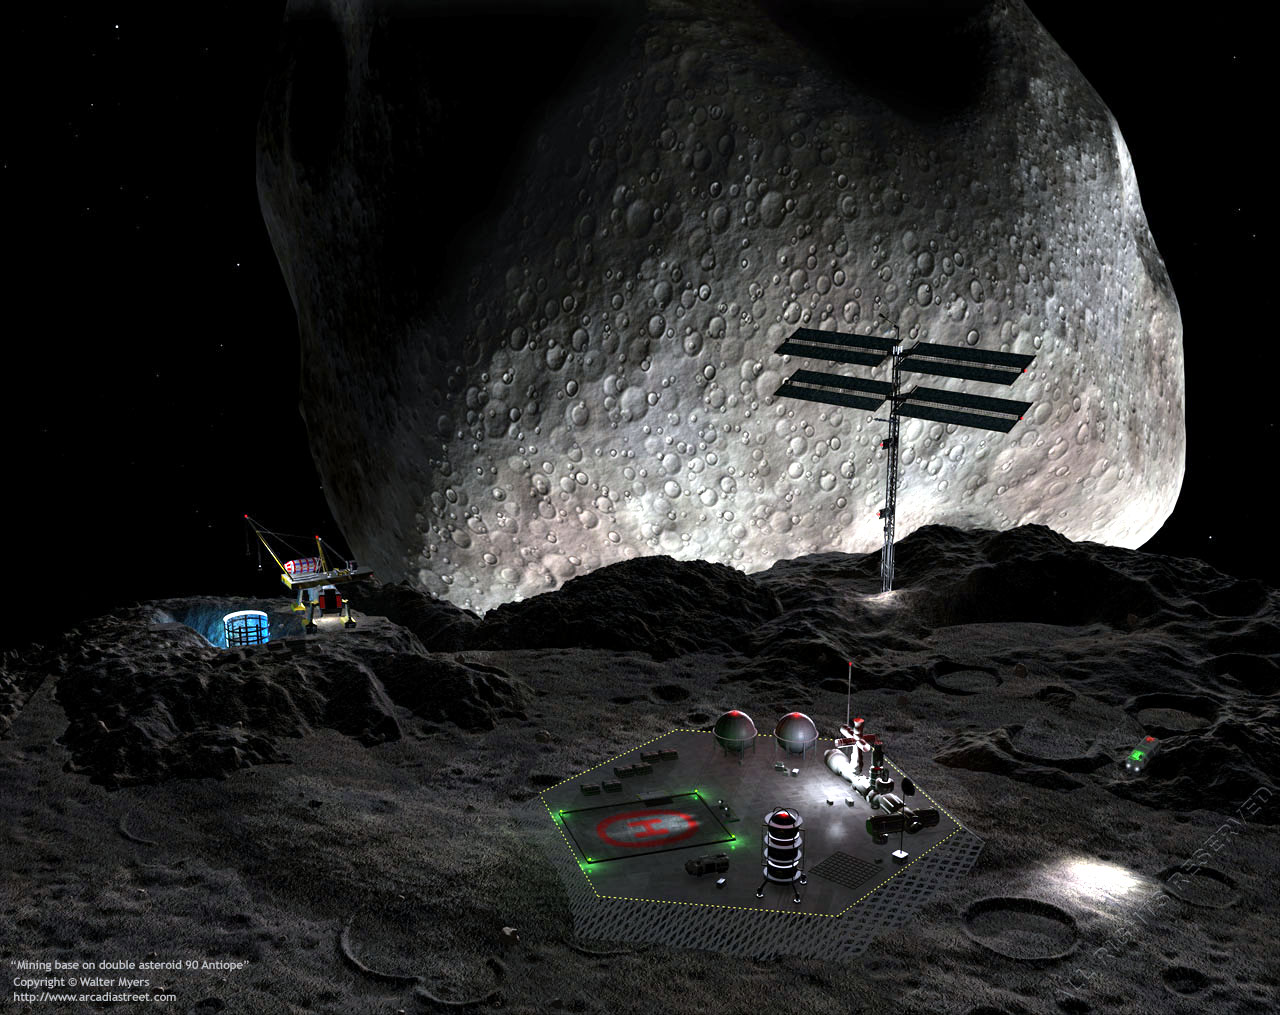 Le prime colonie spaziali saranno miniere su asteroidi